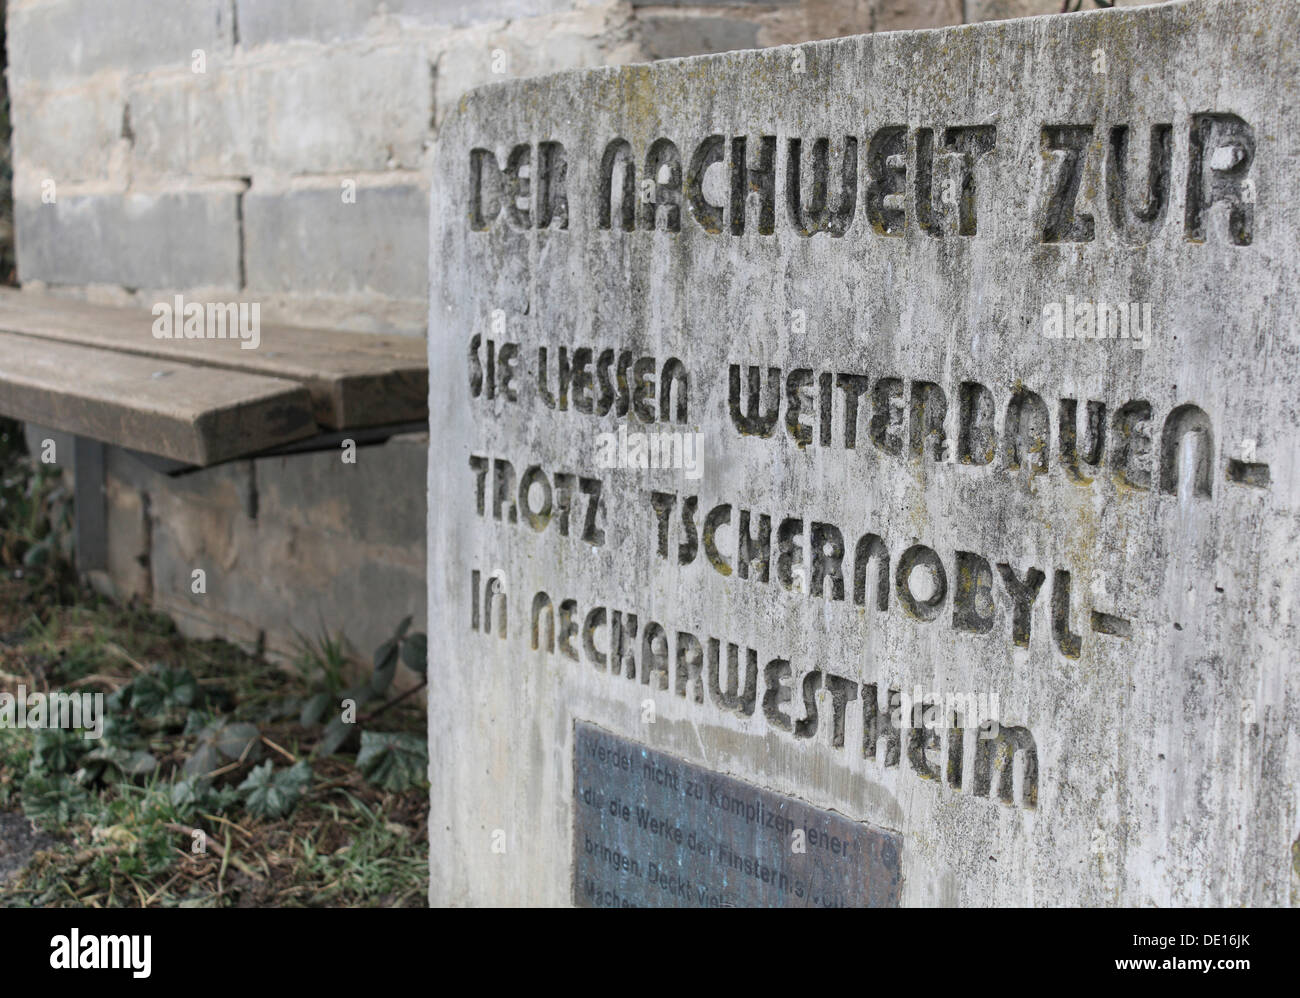 Monumento de piedra para la construcción del plan de energía nuclear Neckarwestheim, Baden-Wuerttemberg Foto de stock